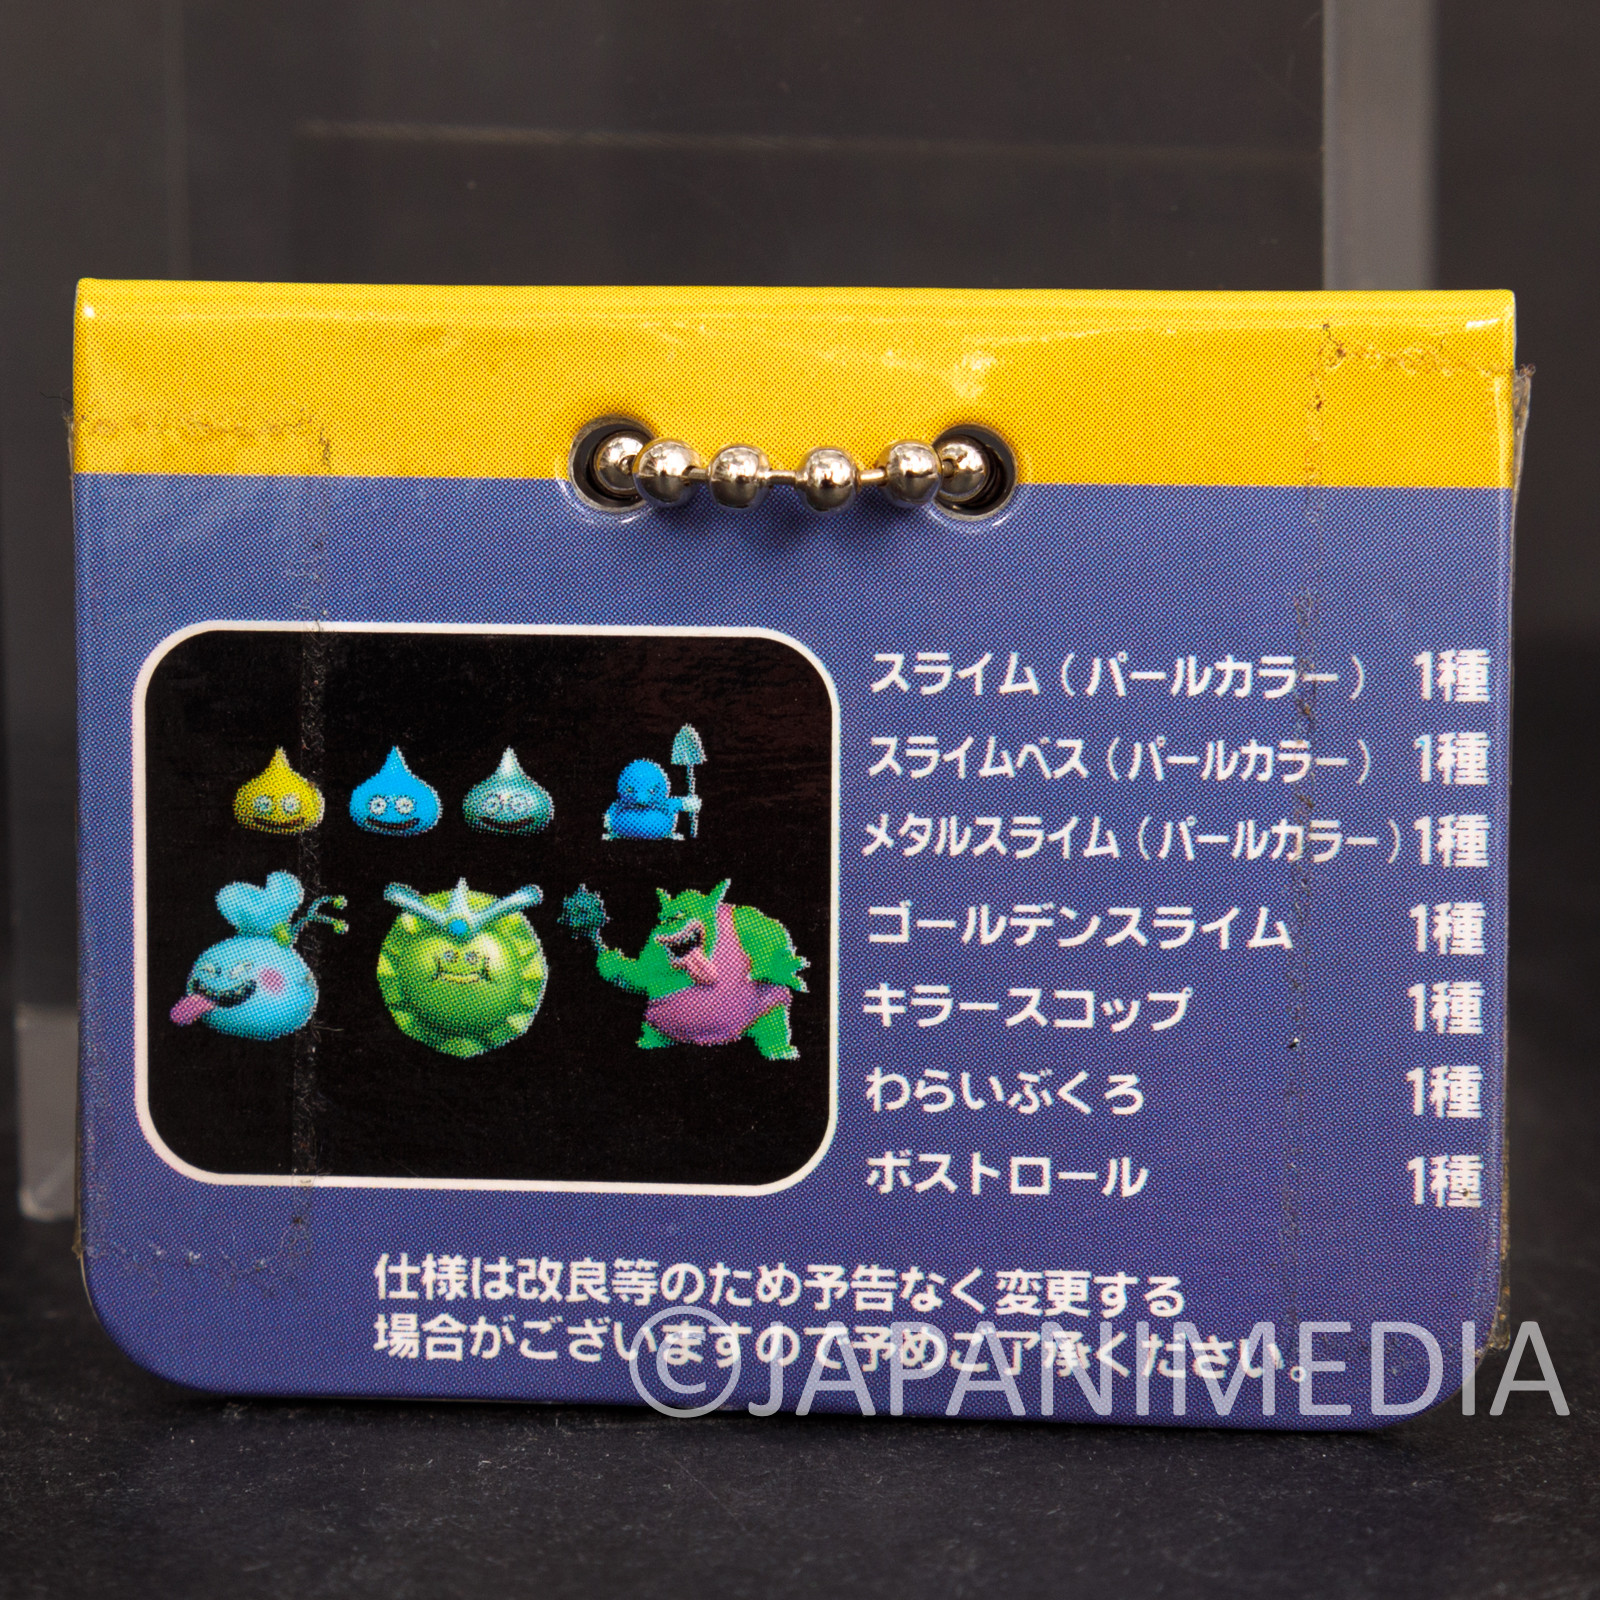 Retro RARE! Dragon Quest Bag o' laughs Mini Figure Ballchain WARRIOR ENIX